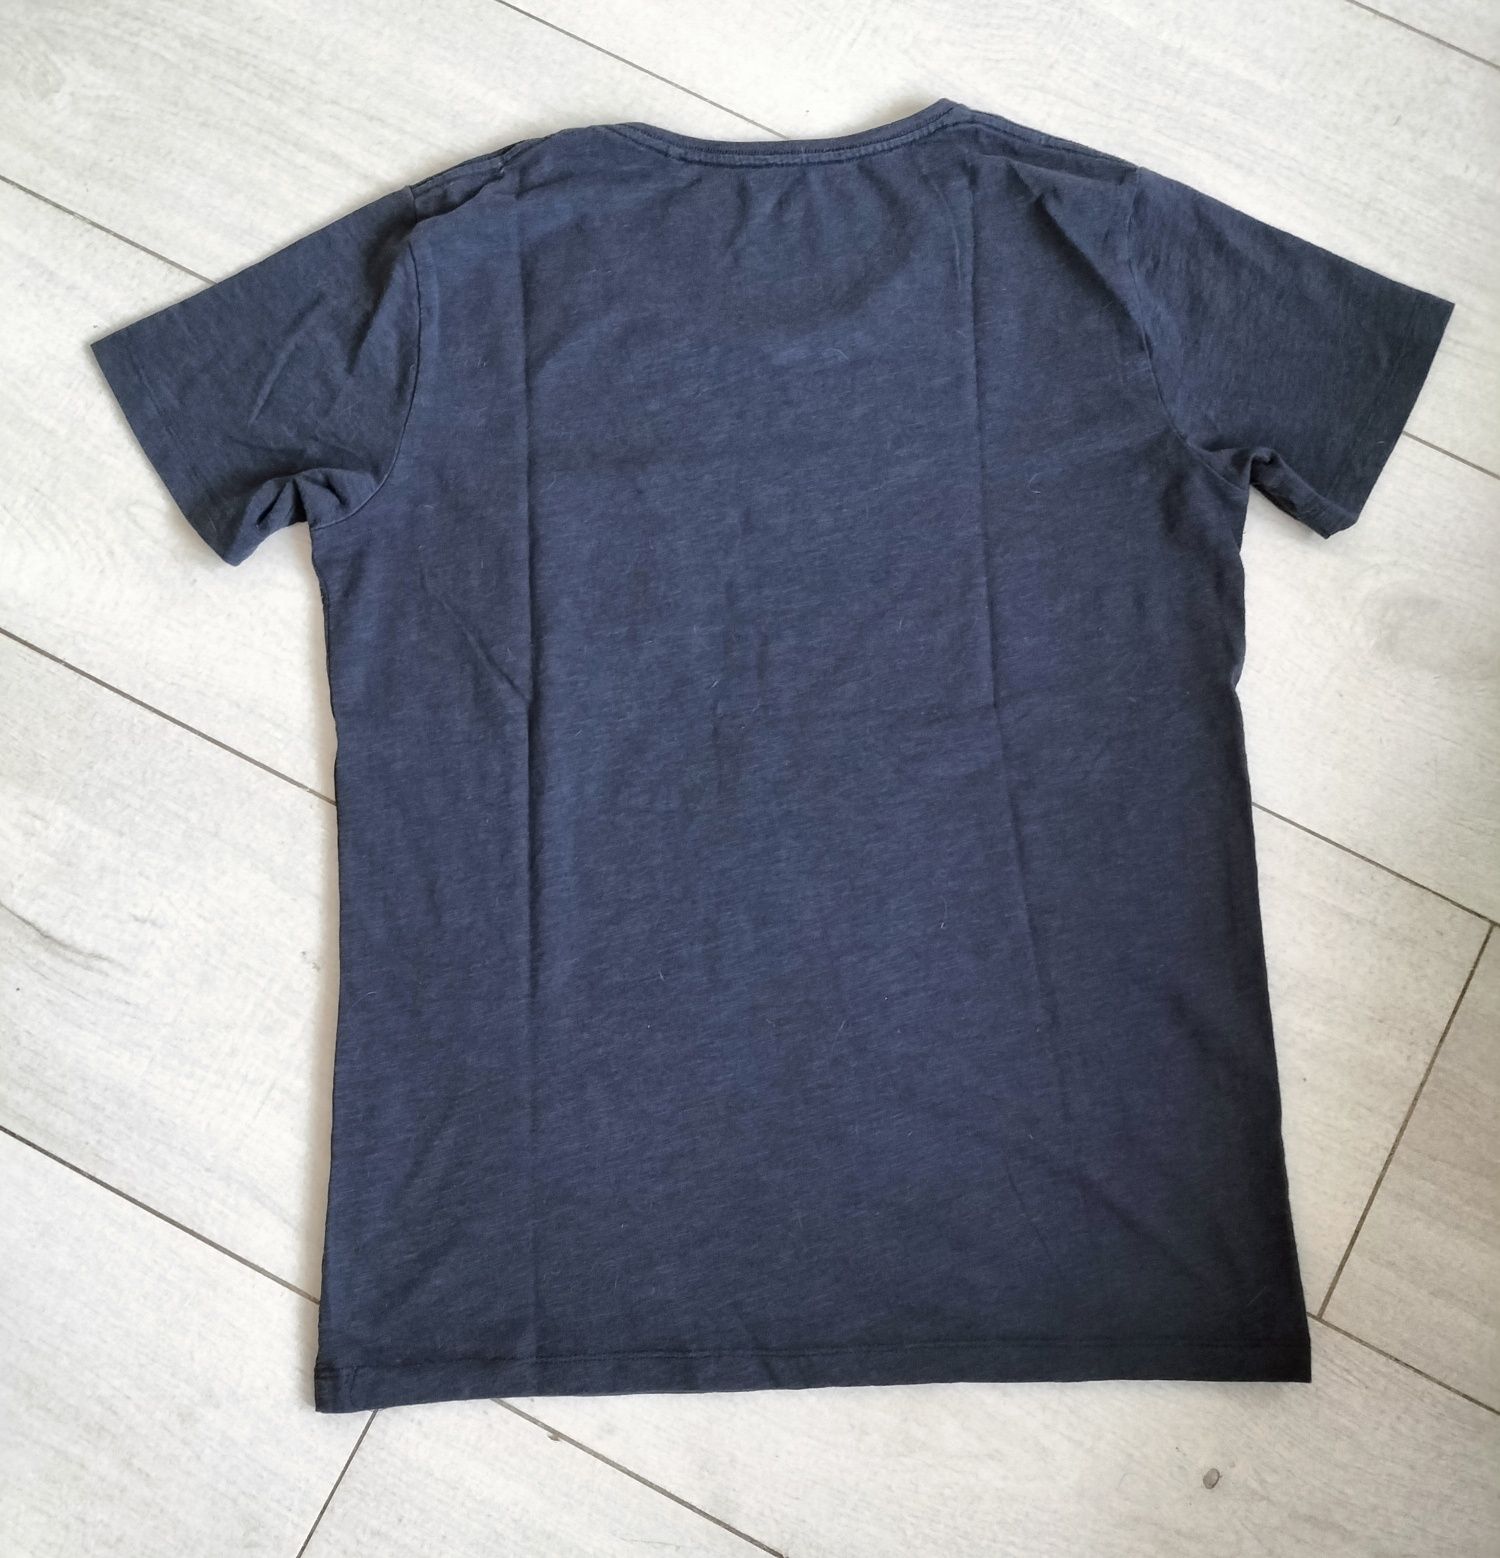 Granatowy t-shirt męski marki Essentials